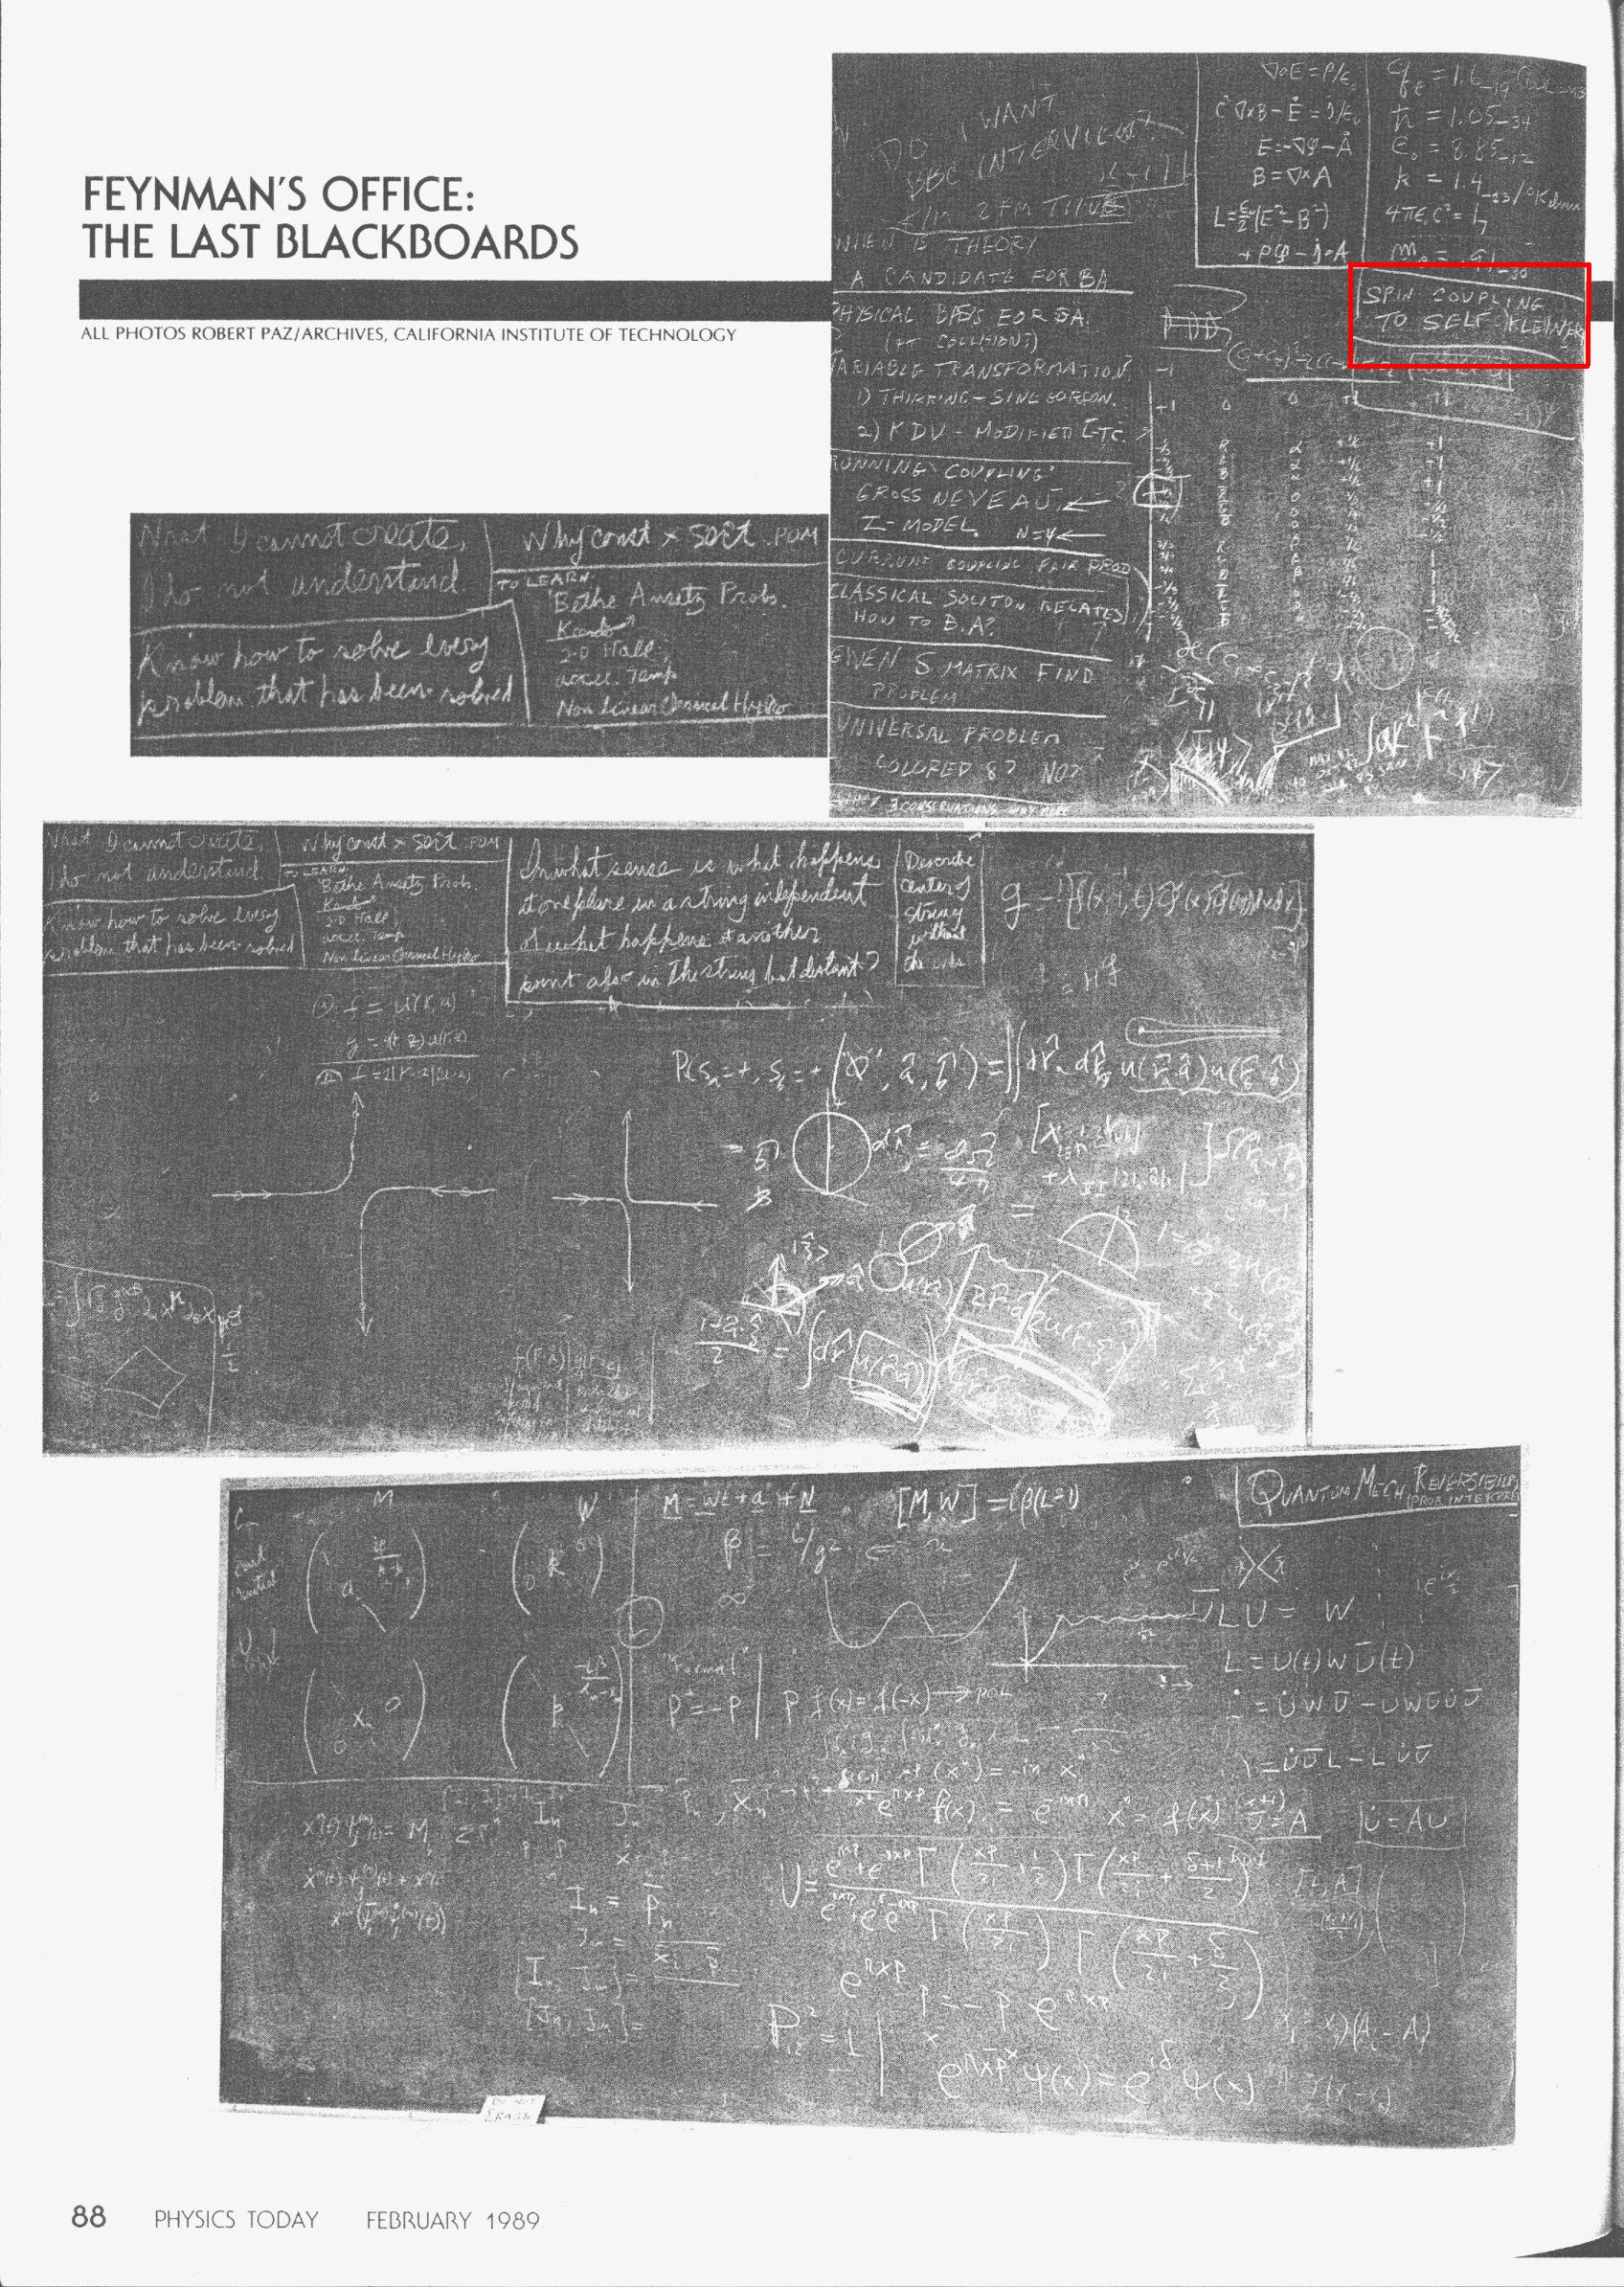 Feynman's last blackboard